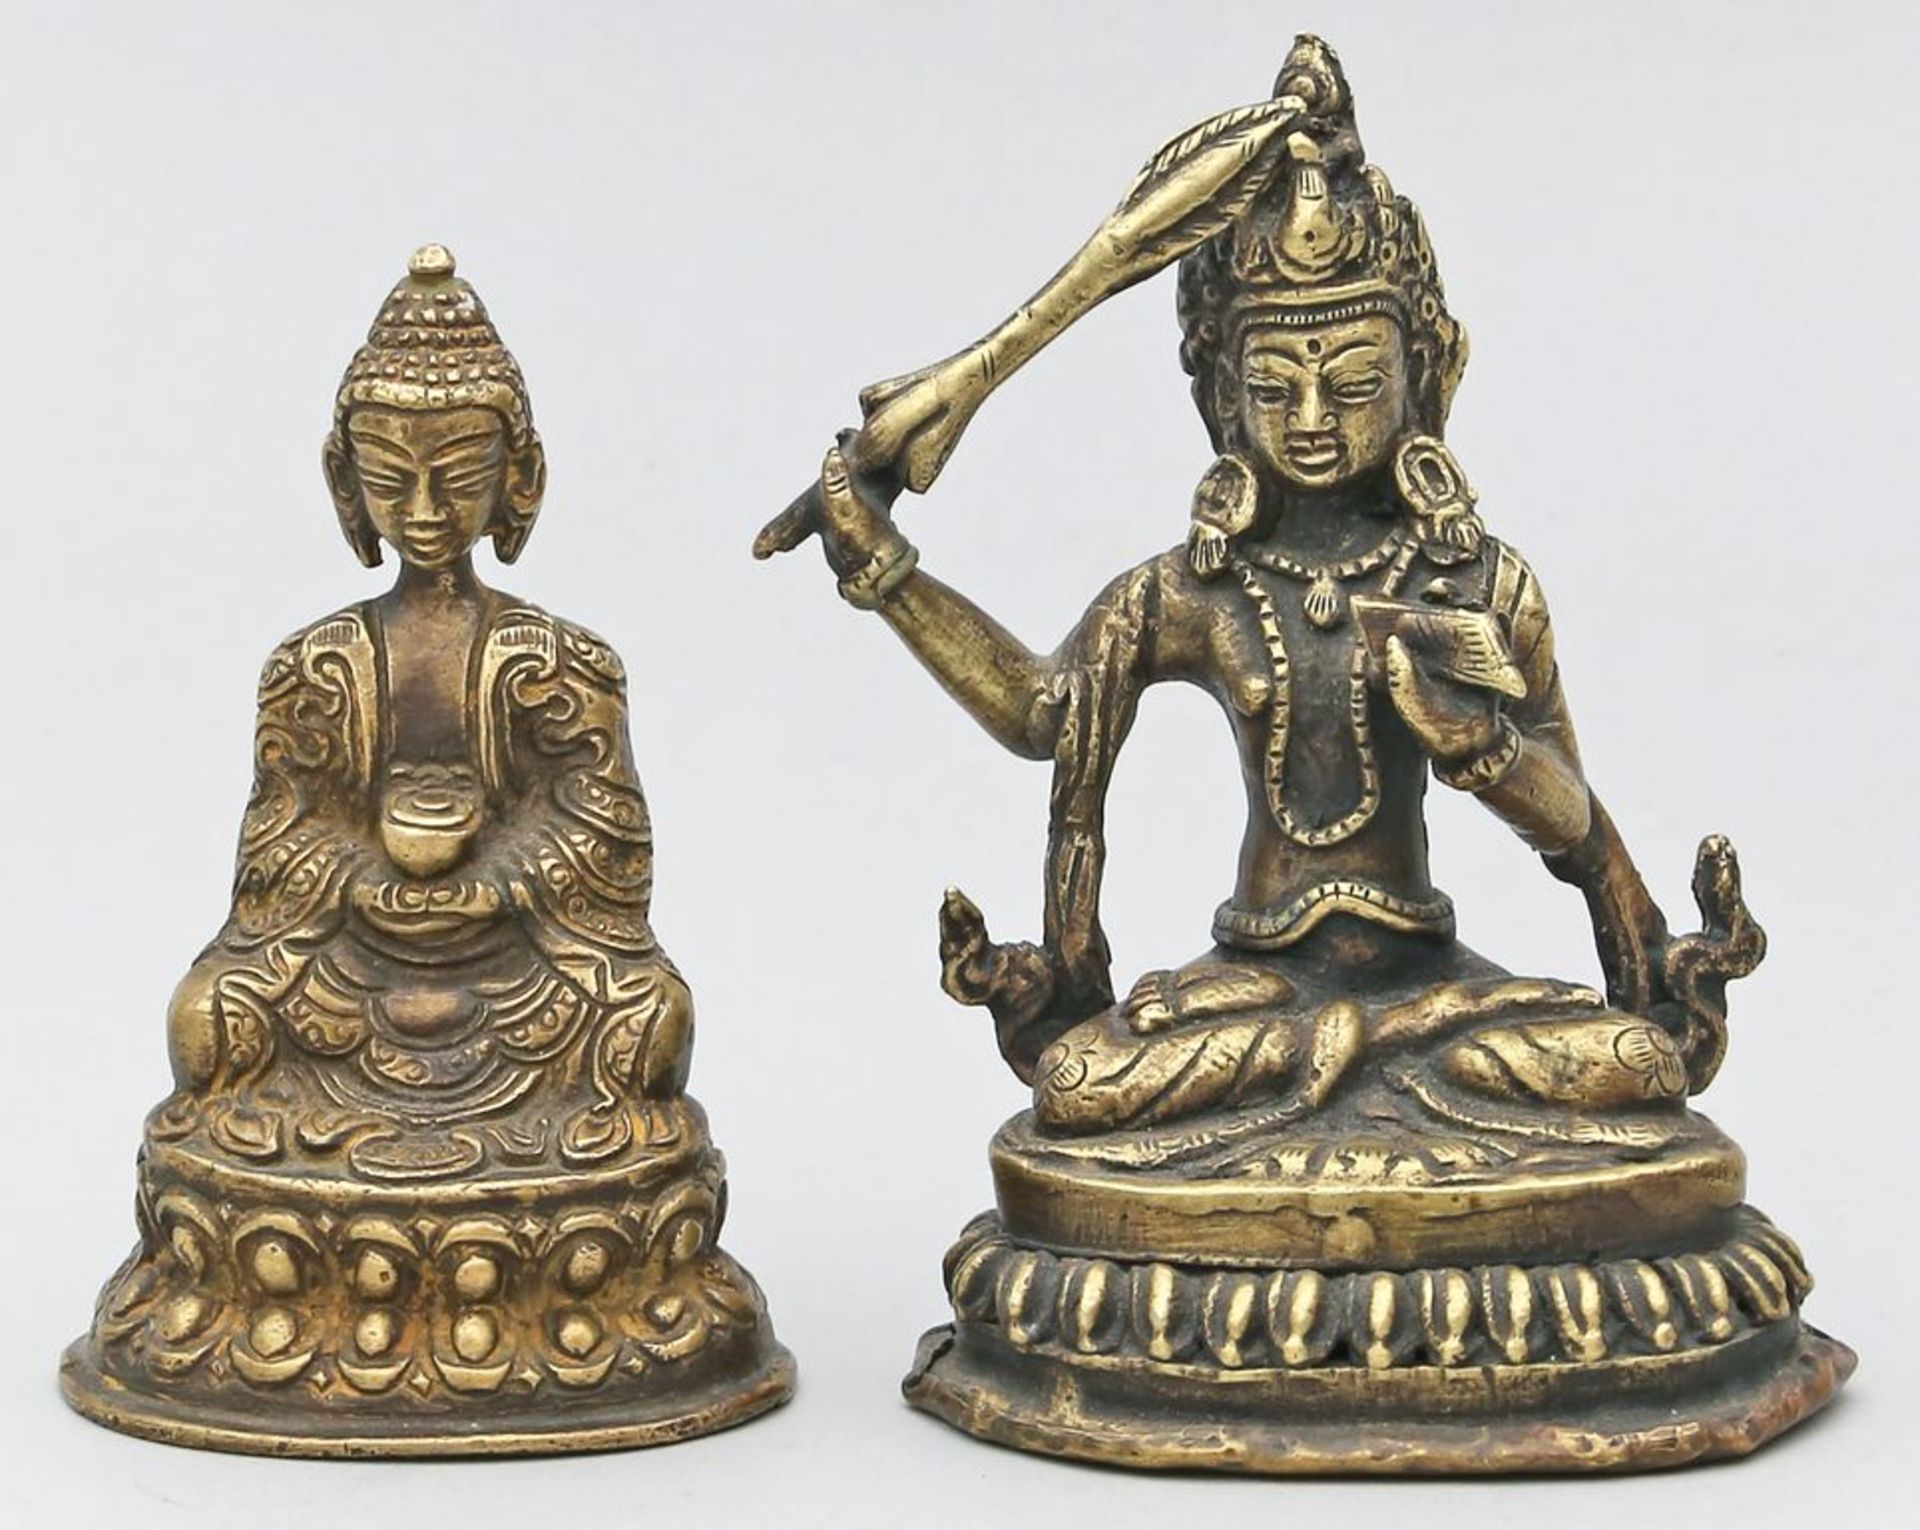 2 Buddhas. Messing oder Bronze, teils braun patiniert. Unterschiedliche Darstellungen.